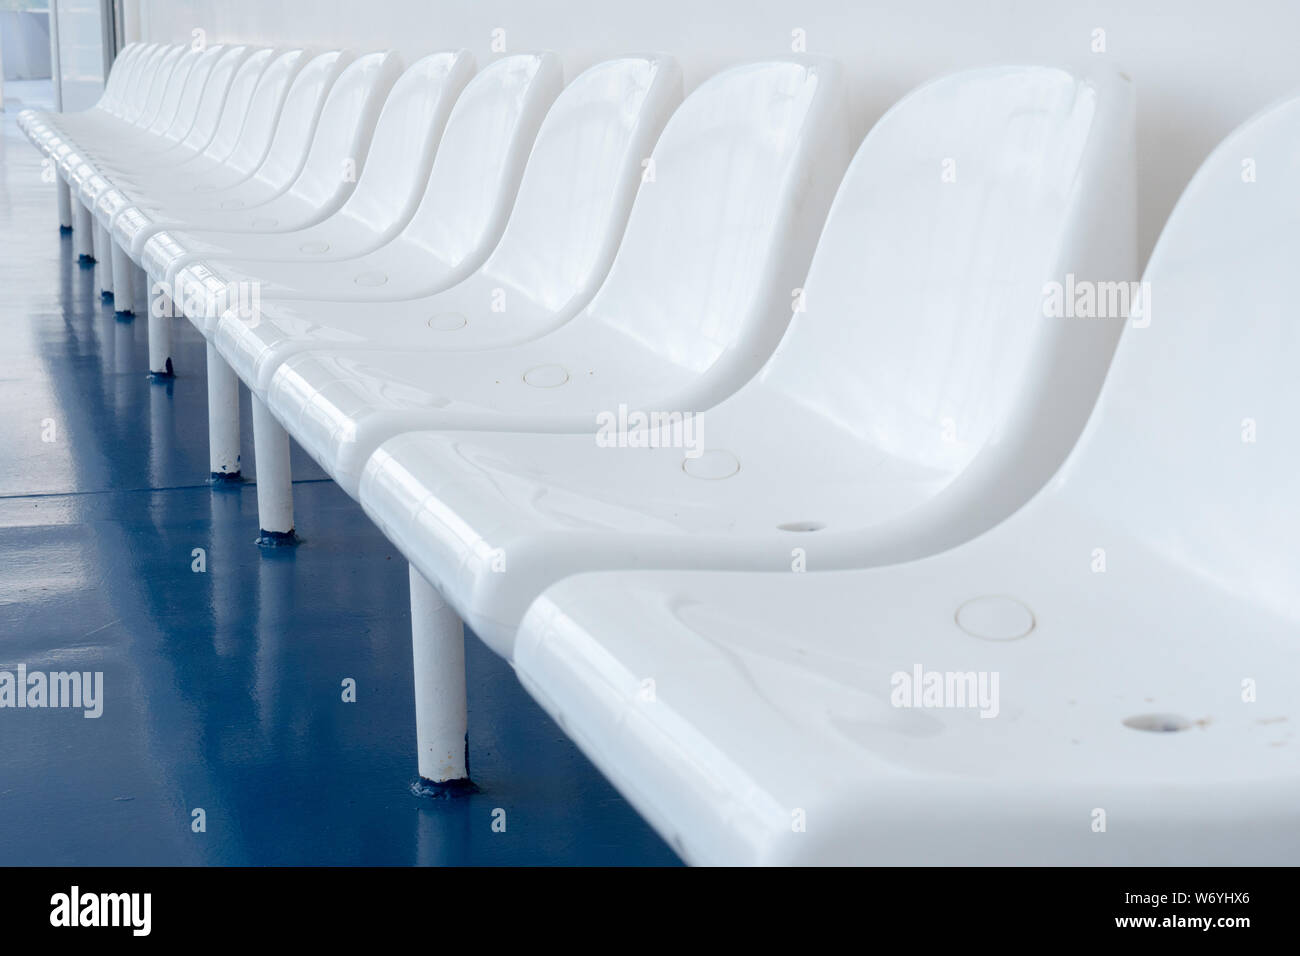 Svuotare le sedie in plastica sul traghetto con la camicia della nave per i passeggeri. Escursione sul mare. Felici vacanze estive. Fila di sedie vuote sedie bianche sul pavimento di colore blu per i visitatori per il resto i seggi vacanti cattiva stagione turistica Foto Stock